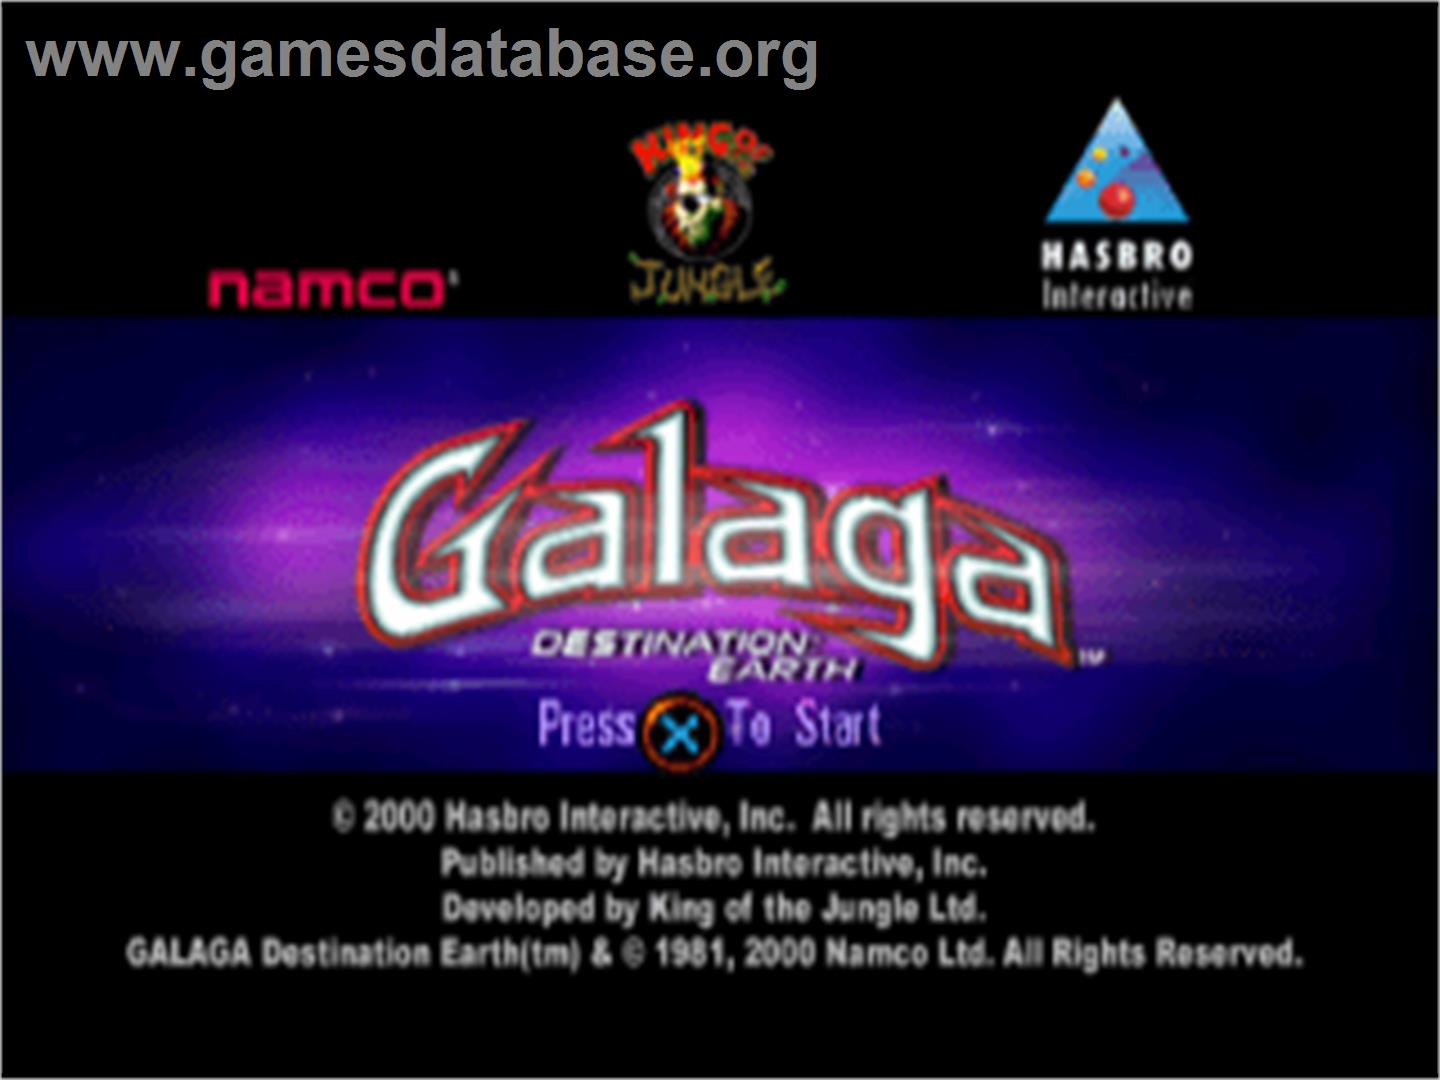 Galaga: Destination Earth - Sony Playstation - Artwork - Title Screen